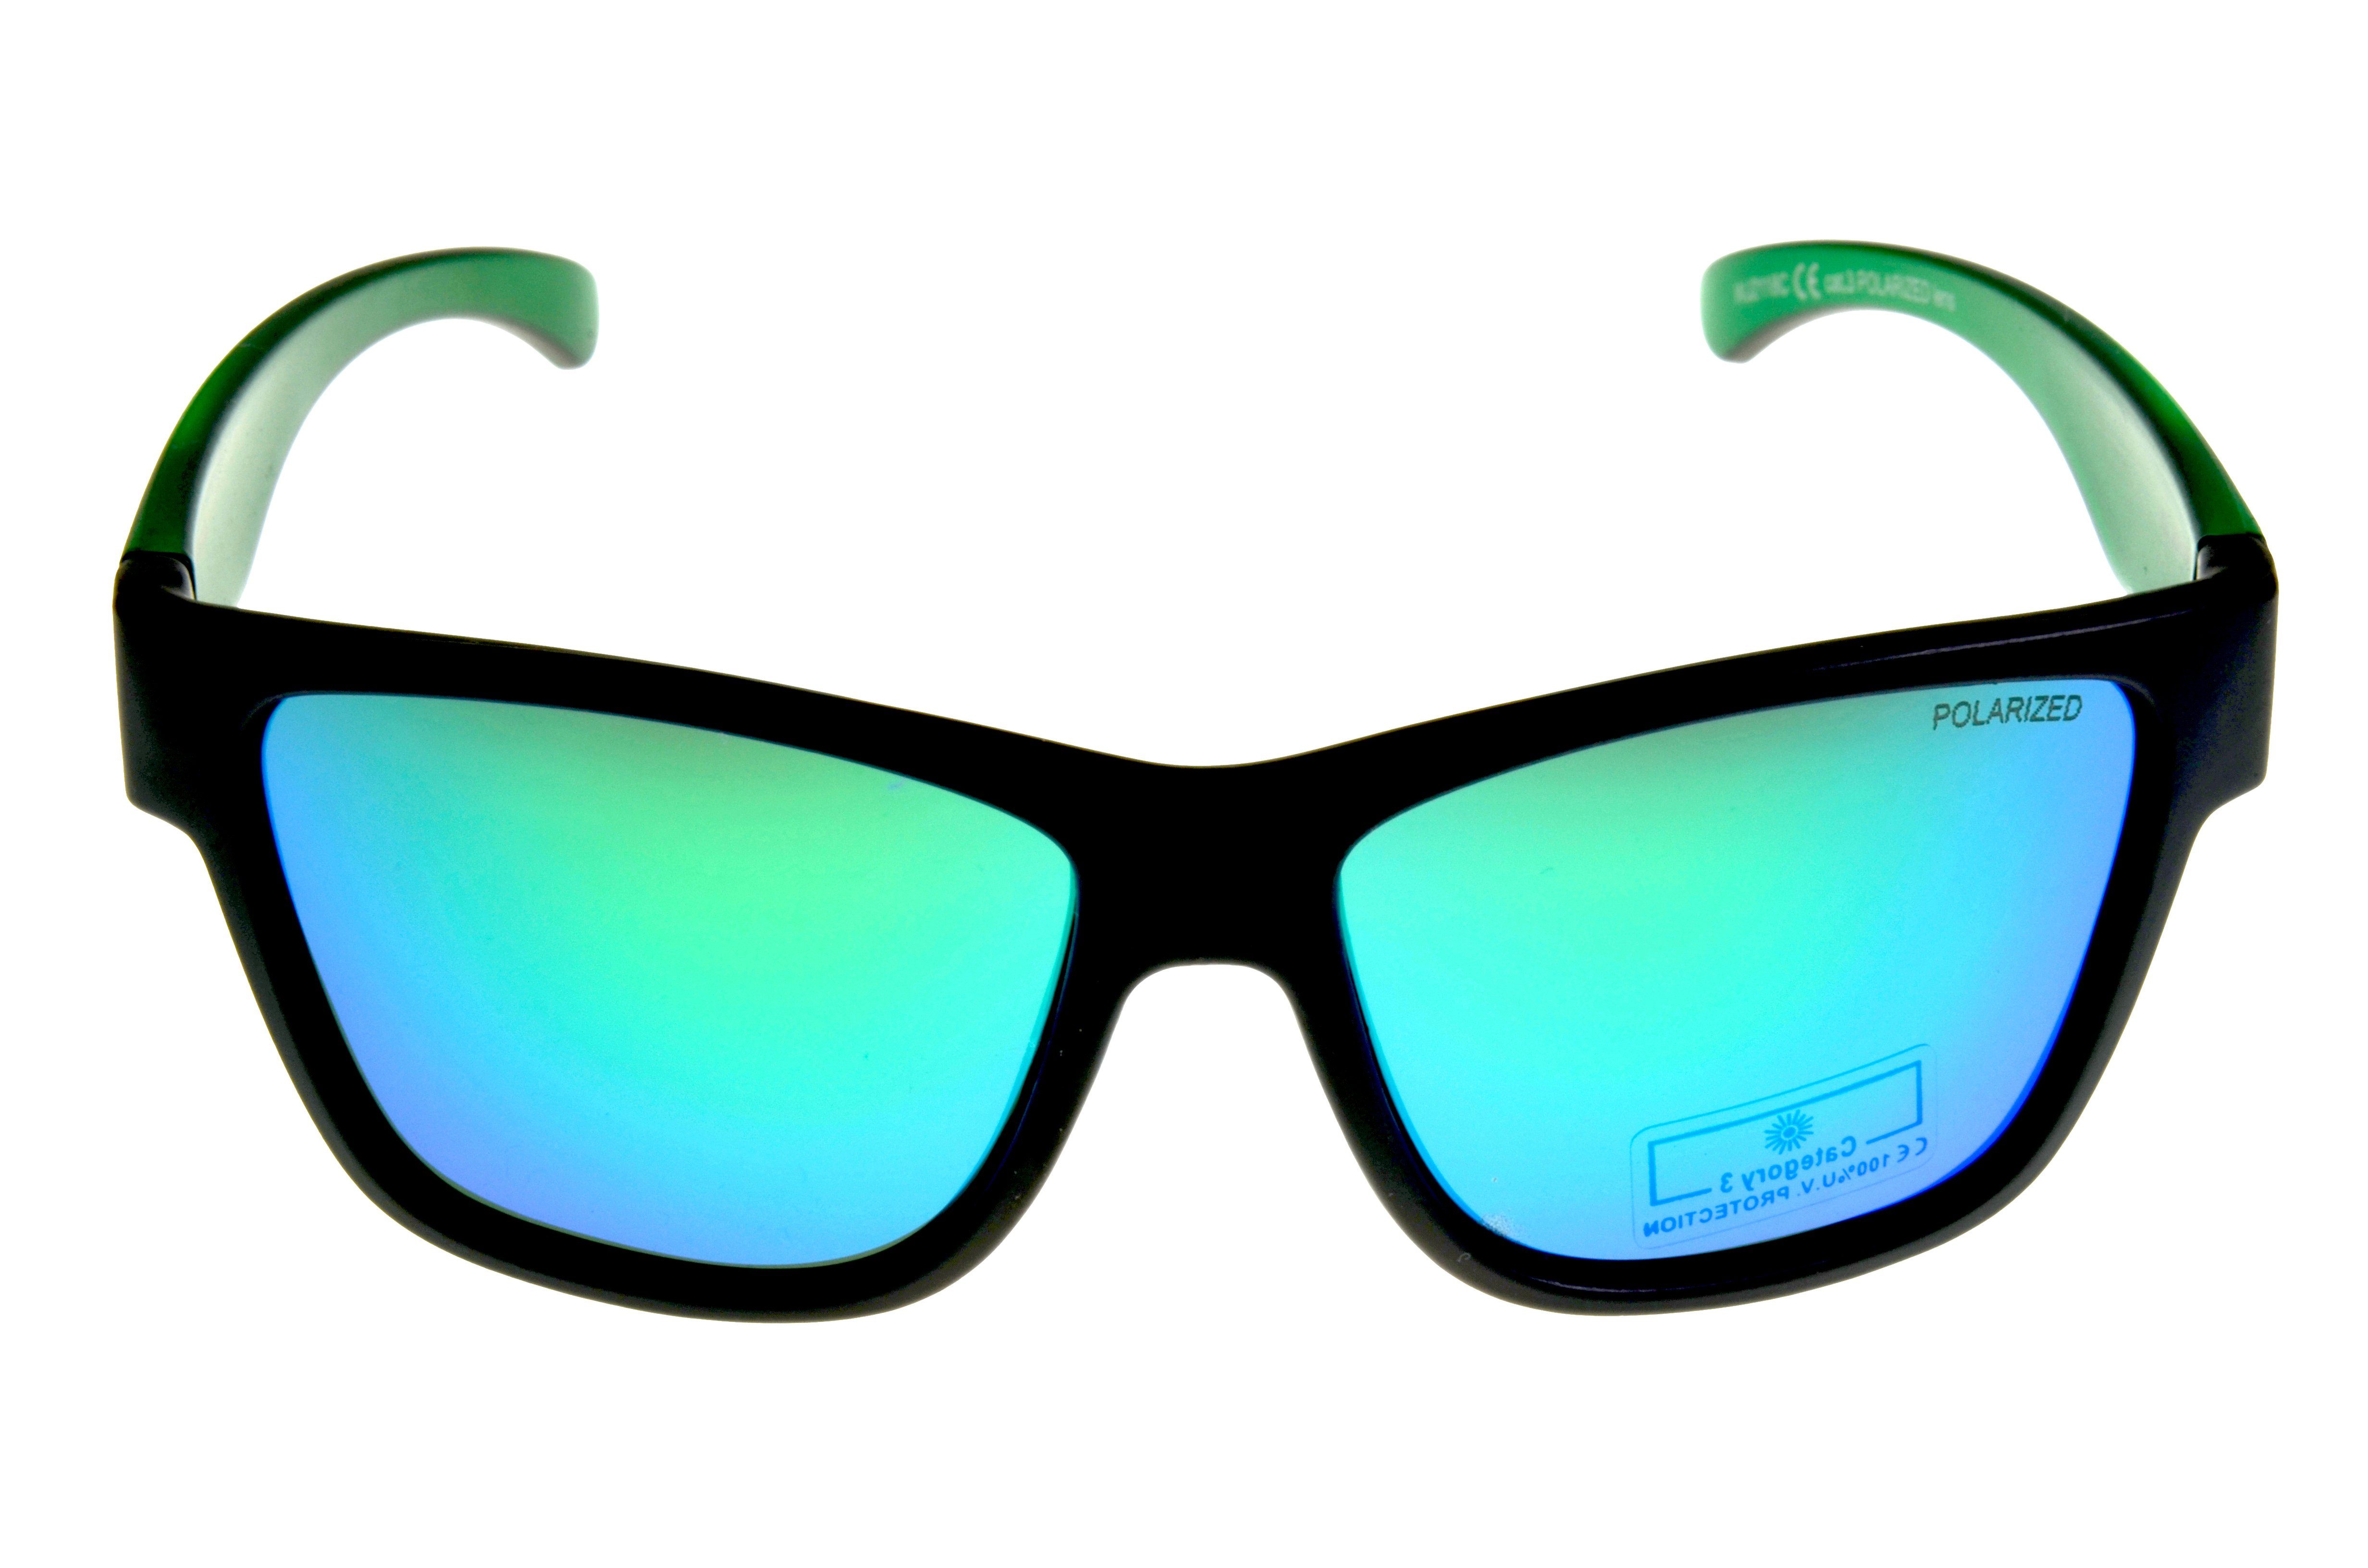 Gamswild Sonnenbrille WJ2118 GAMSKIDS Jugendbrille 8-18 rot, "polarisierte halbtransparenter Unisex grün, blau Rahmen Gläser" kids Jahre Kinderbrille NEU